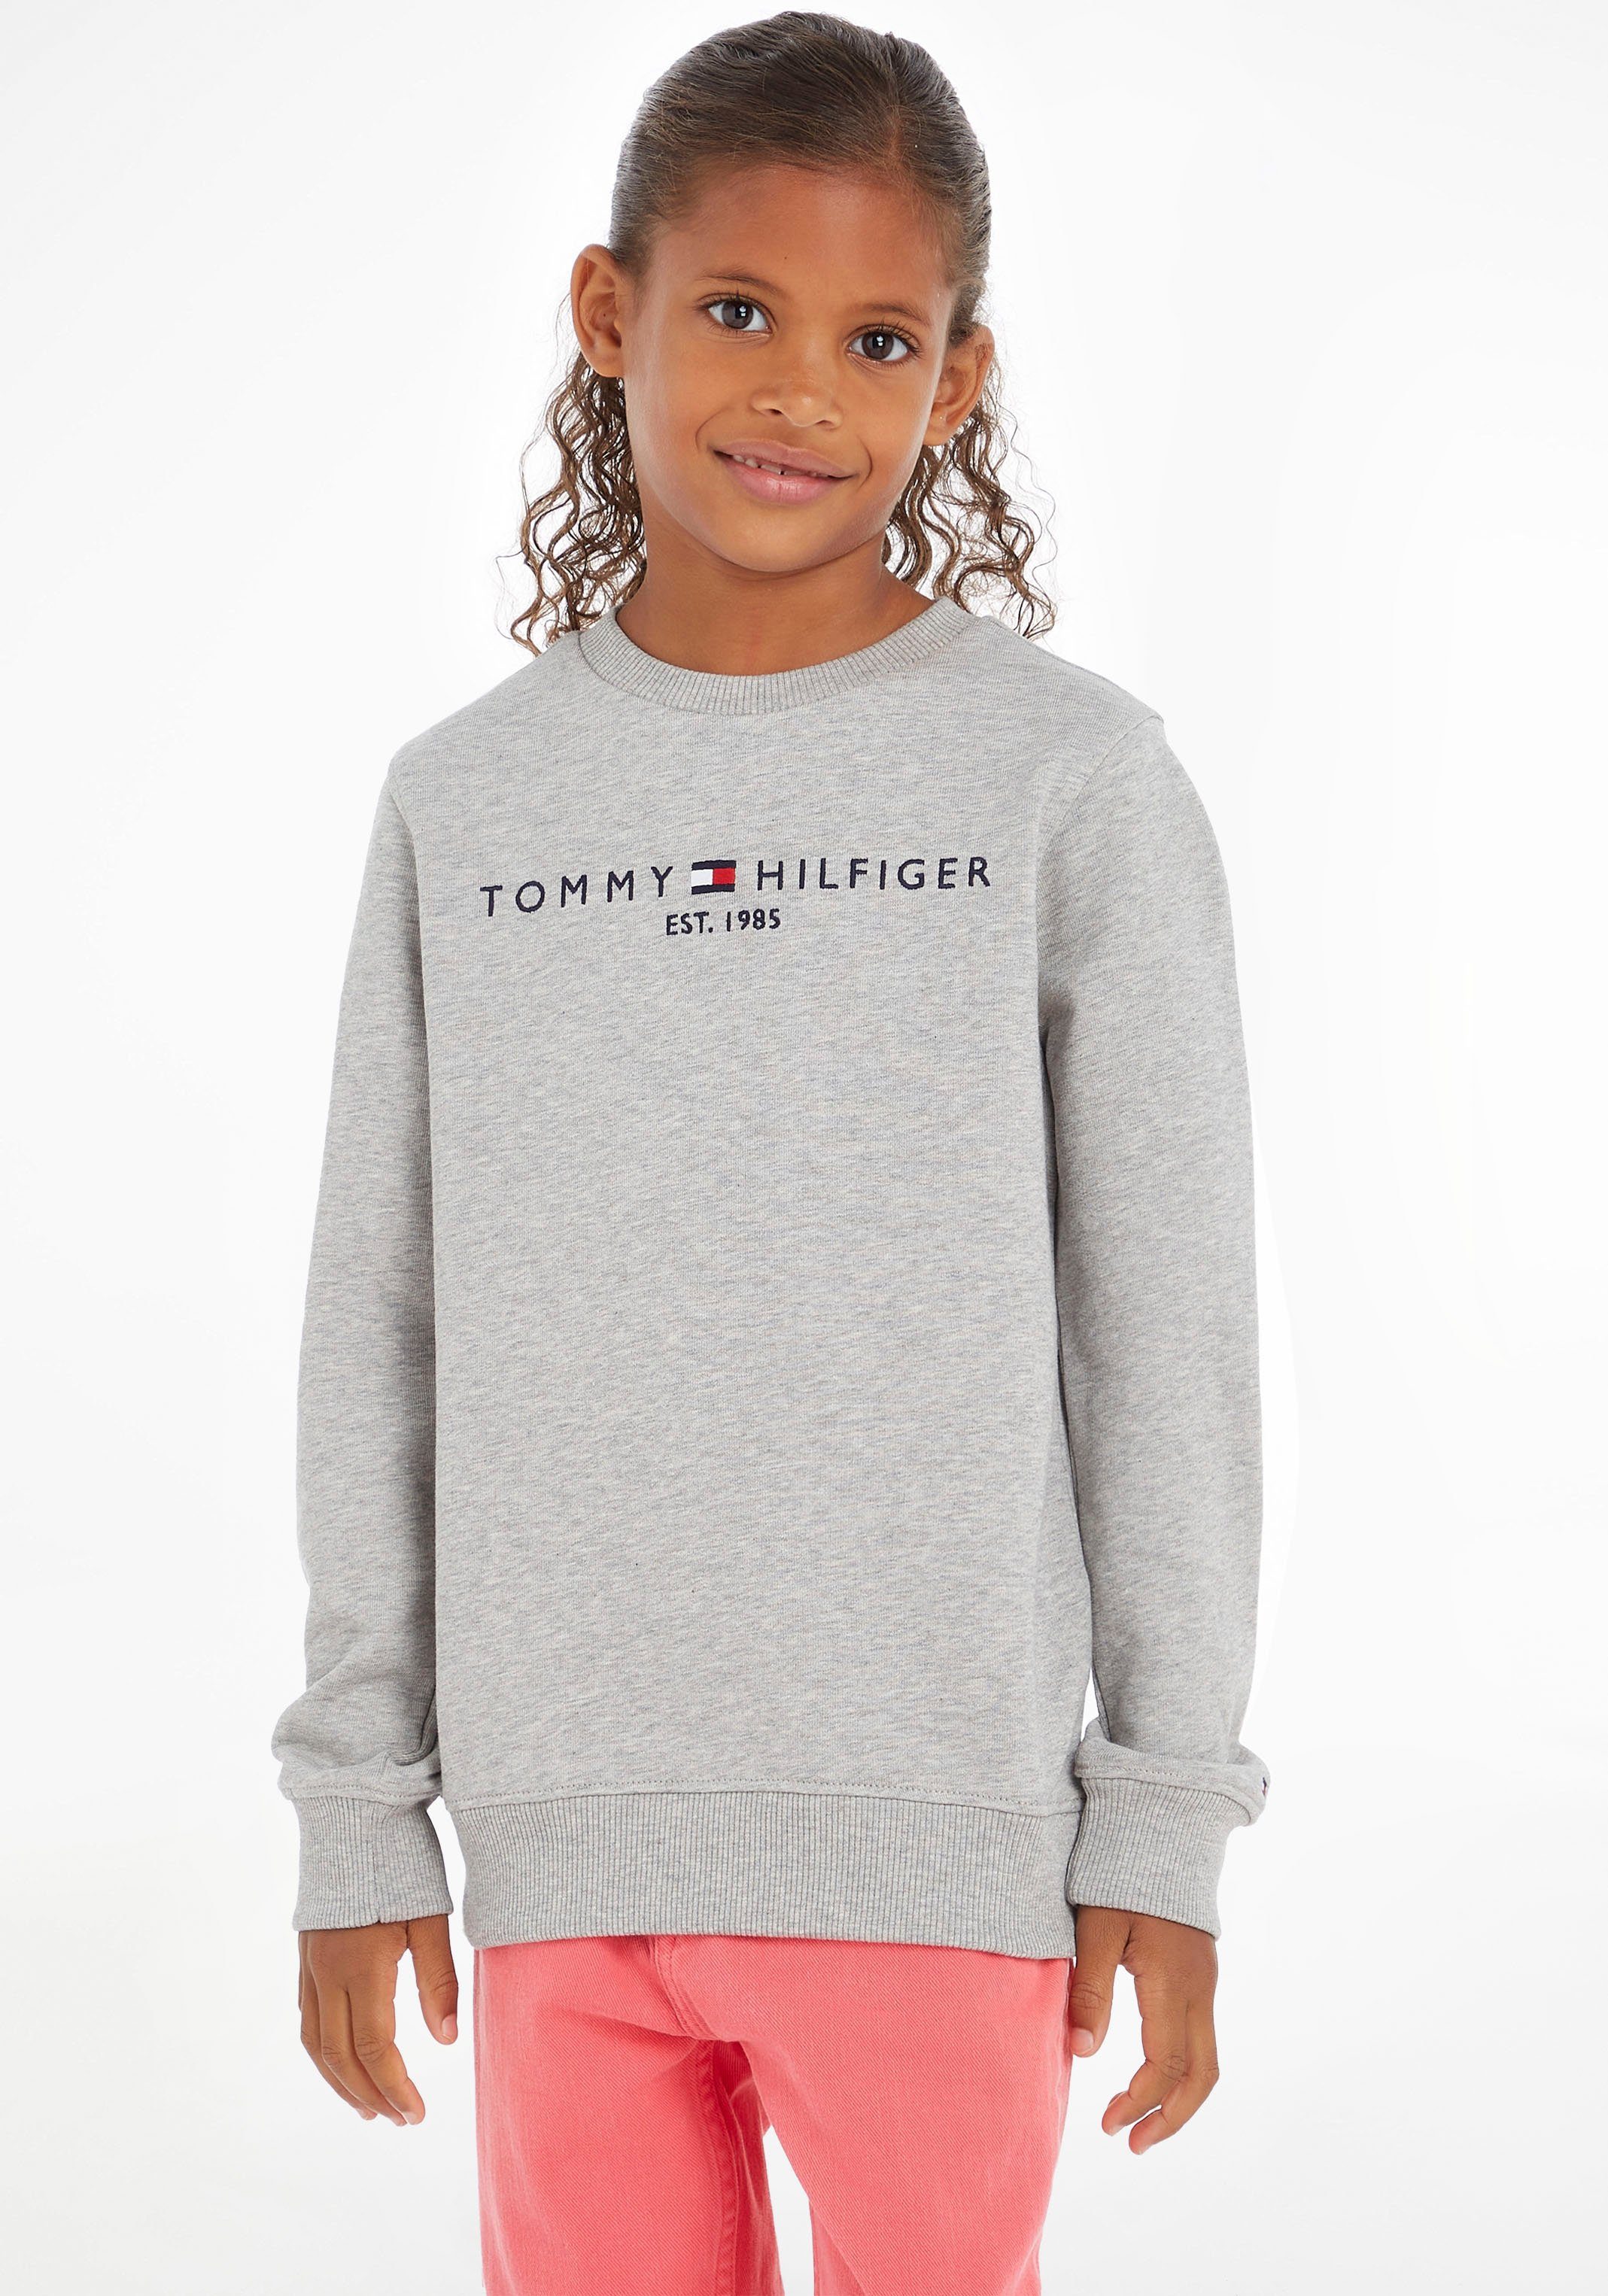 Tommy Hilfiger Sweatshirt ESSENTIAL SWEATSHIRT Mädchen Junior Kids Kinder MiniMe,für Jungen und